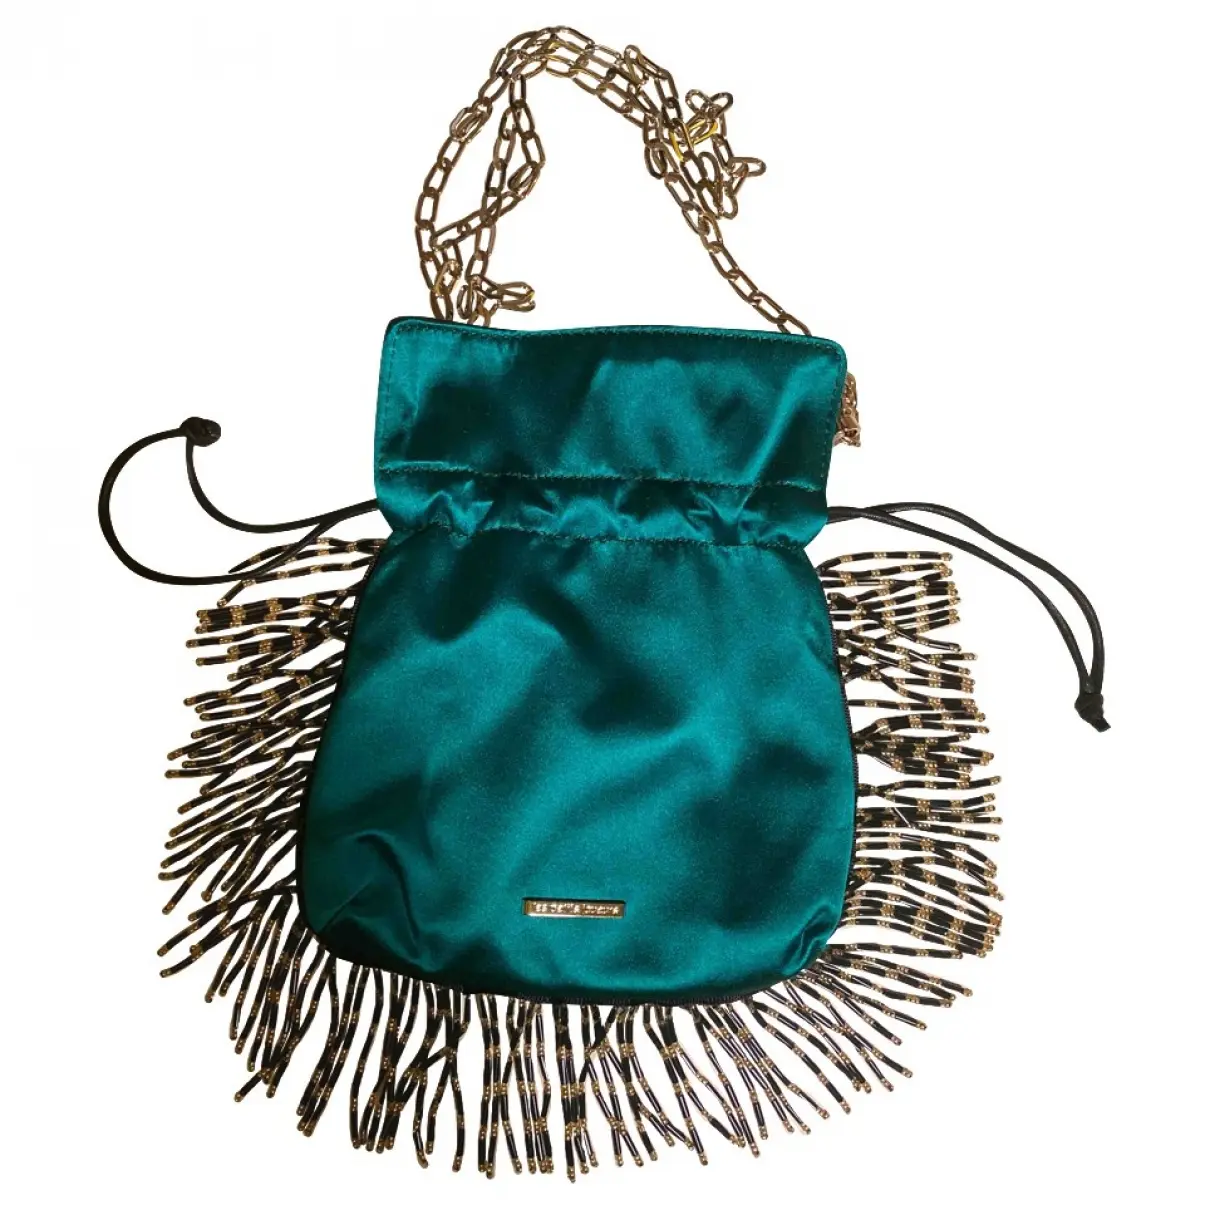 Silk handbag Les Petits Joueurs